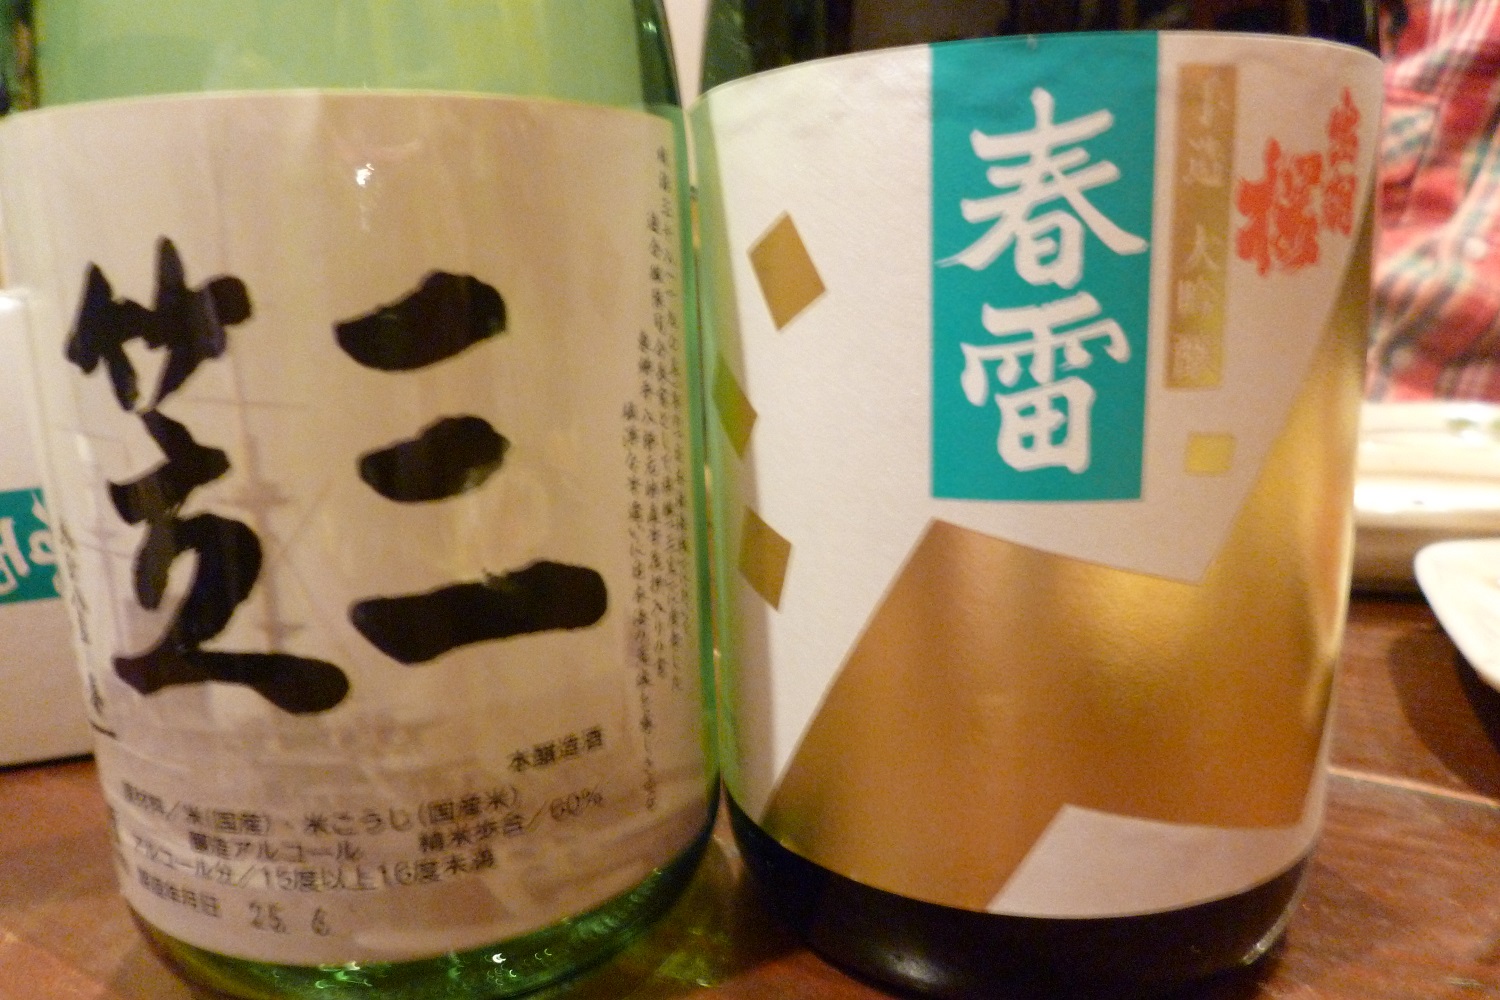 飲んだ日本酒は「三笠」「春雷」。どちらも辛口の旨い酒でした